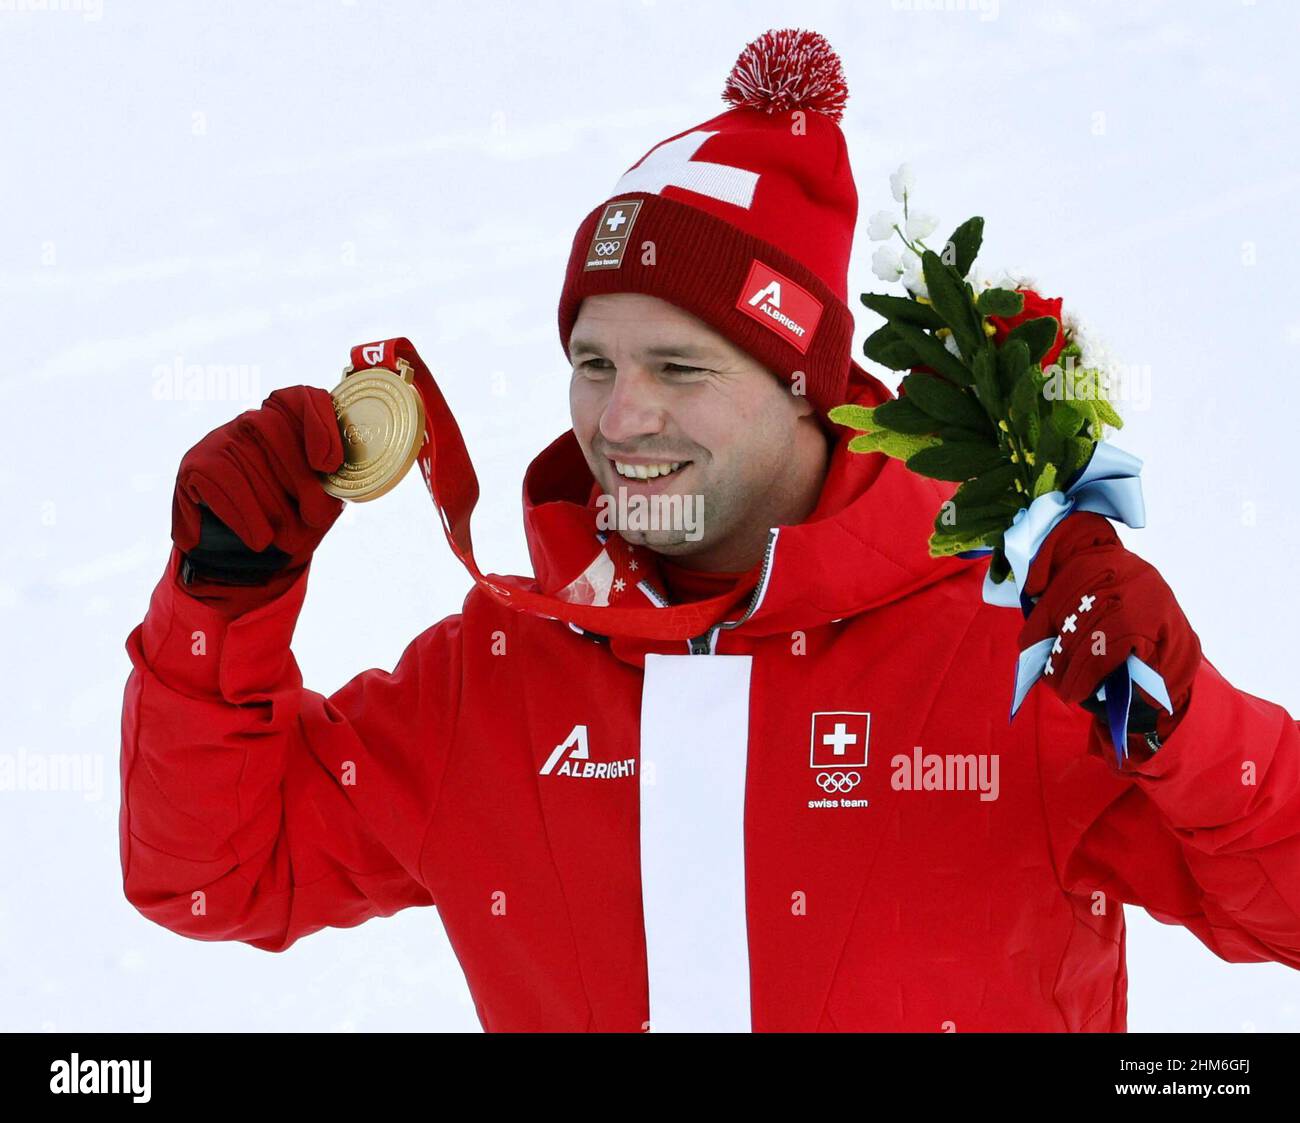 Beat Feuz, skieur alpin suisse, célèbre après avoir remporté la médaille  d'or de descente des hommes aux Jeux Olympiques d'hiver de Beijing le 7  février 2022, au Centre national de ski alpin